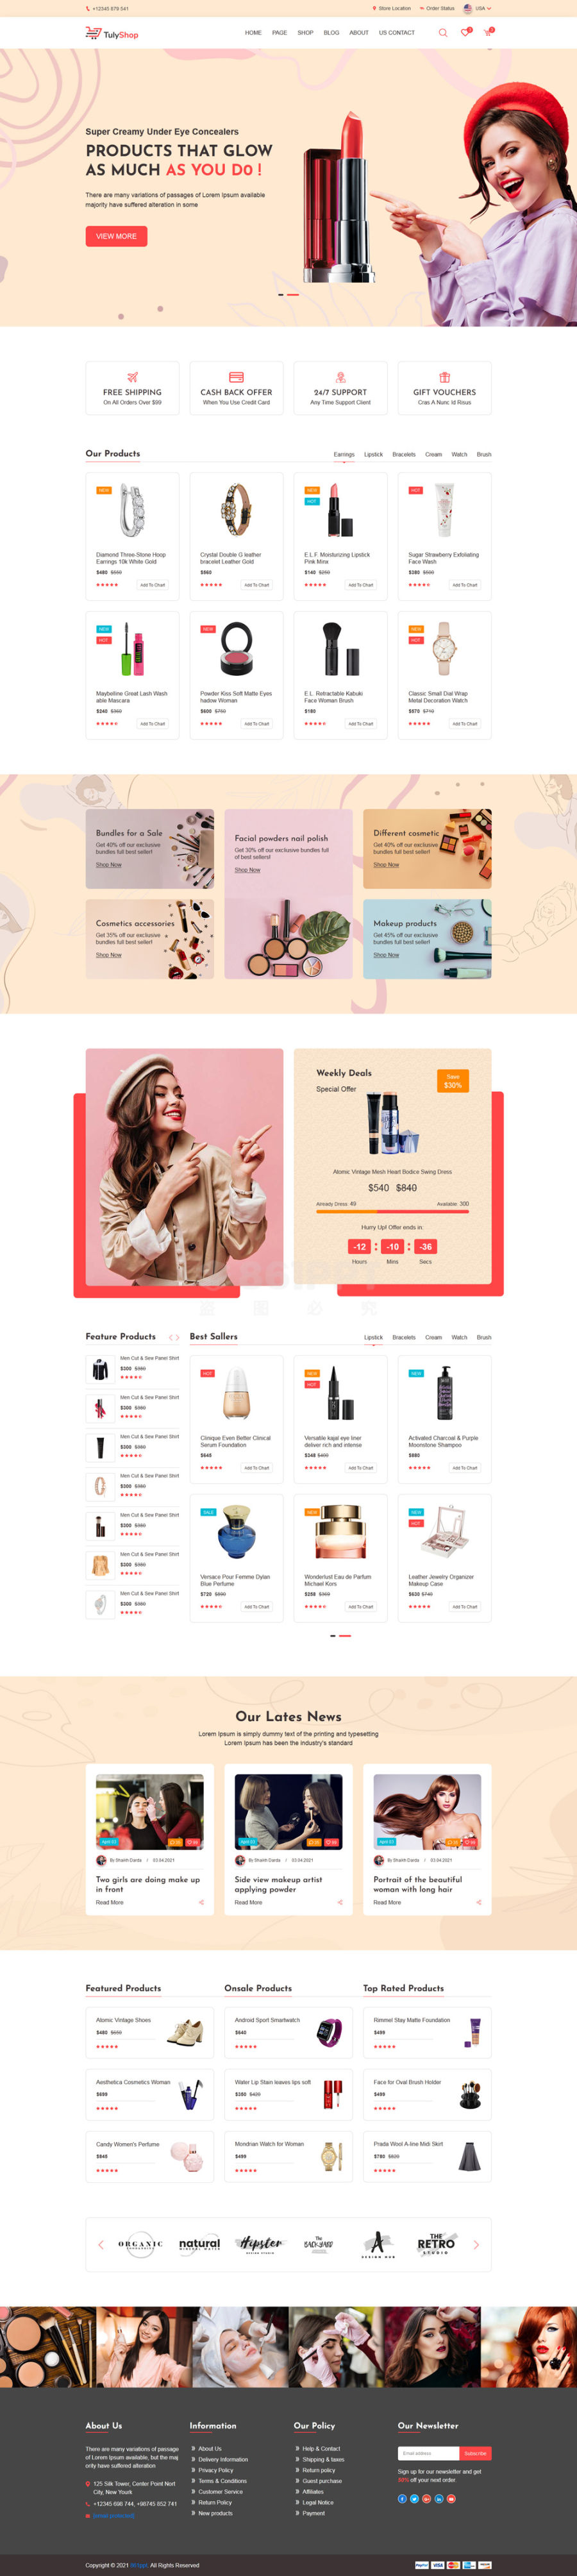 响应式时尚女性化妆品商城网站模板